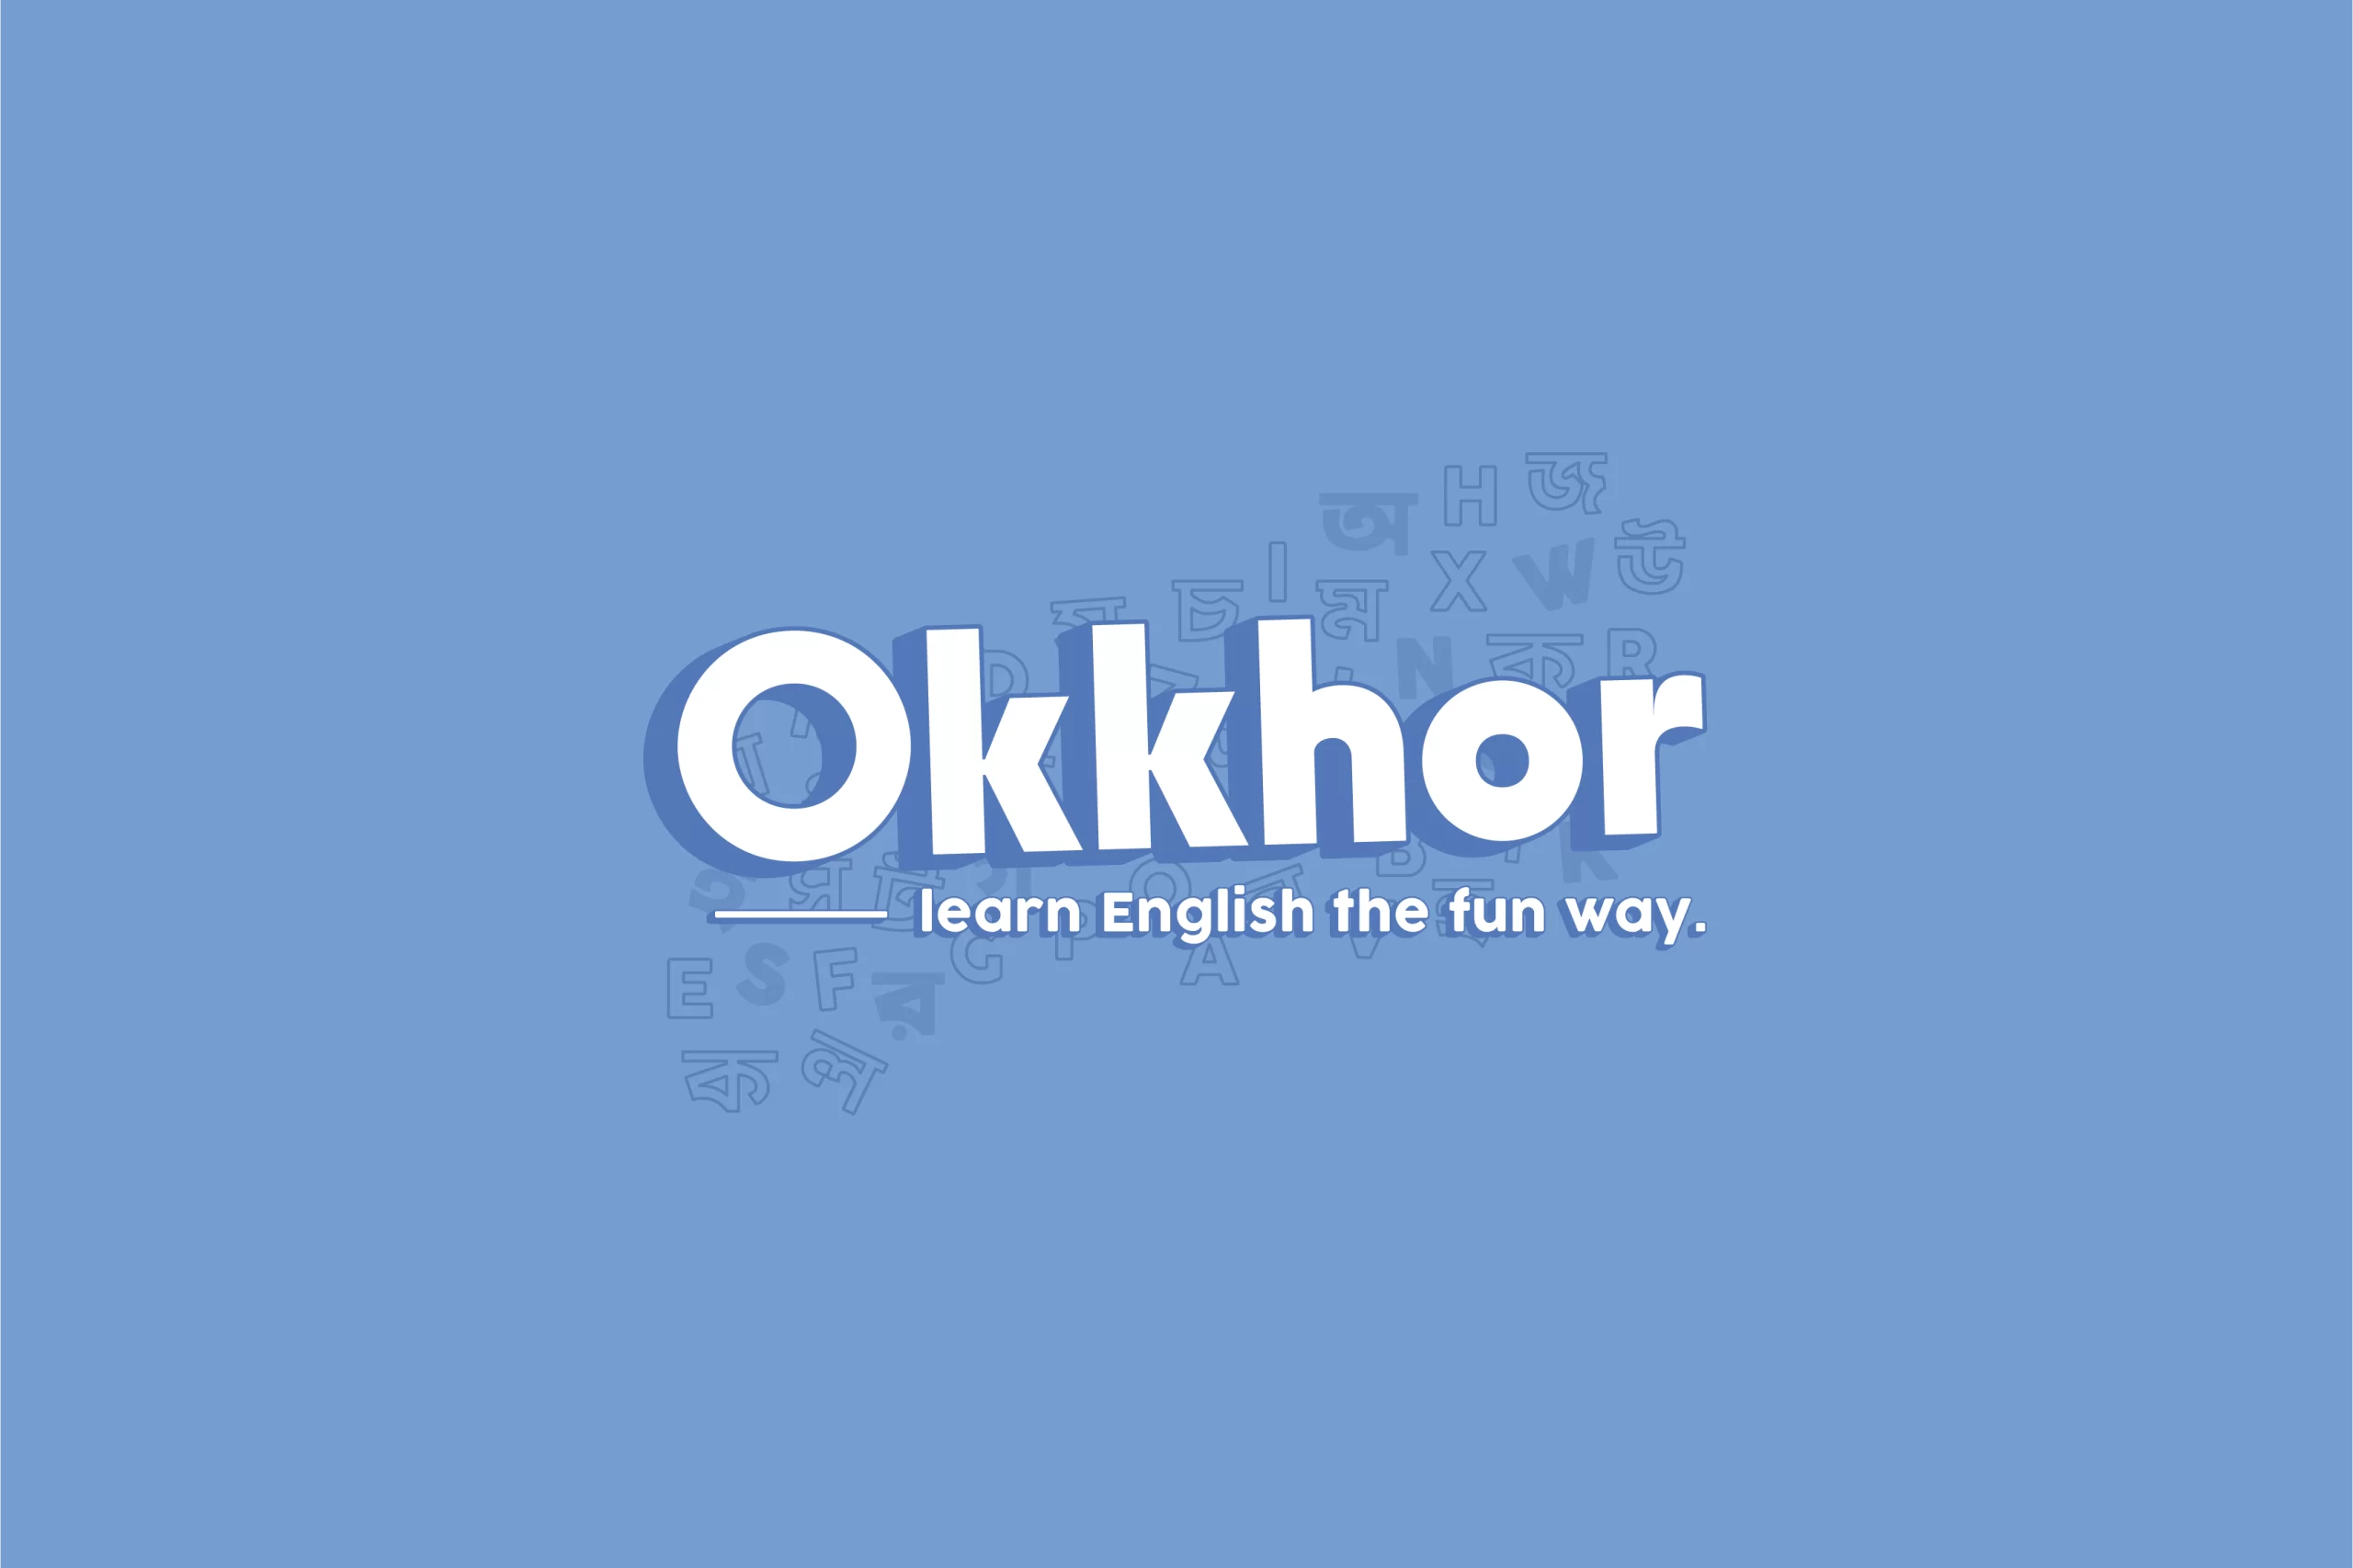 Okkhor.